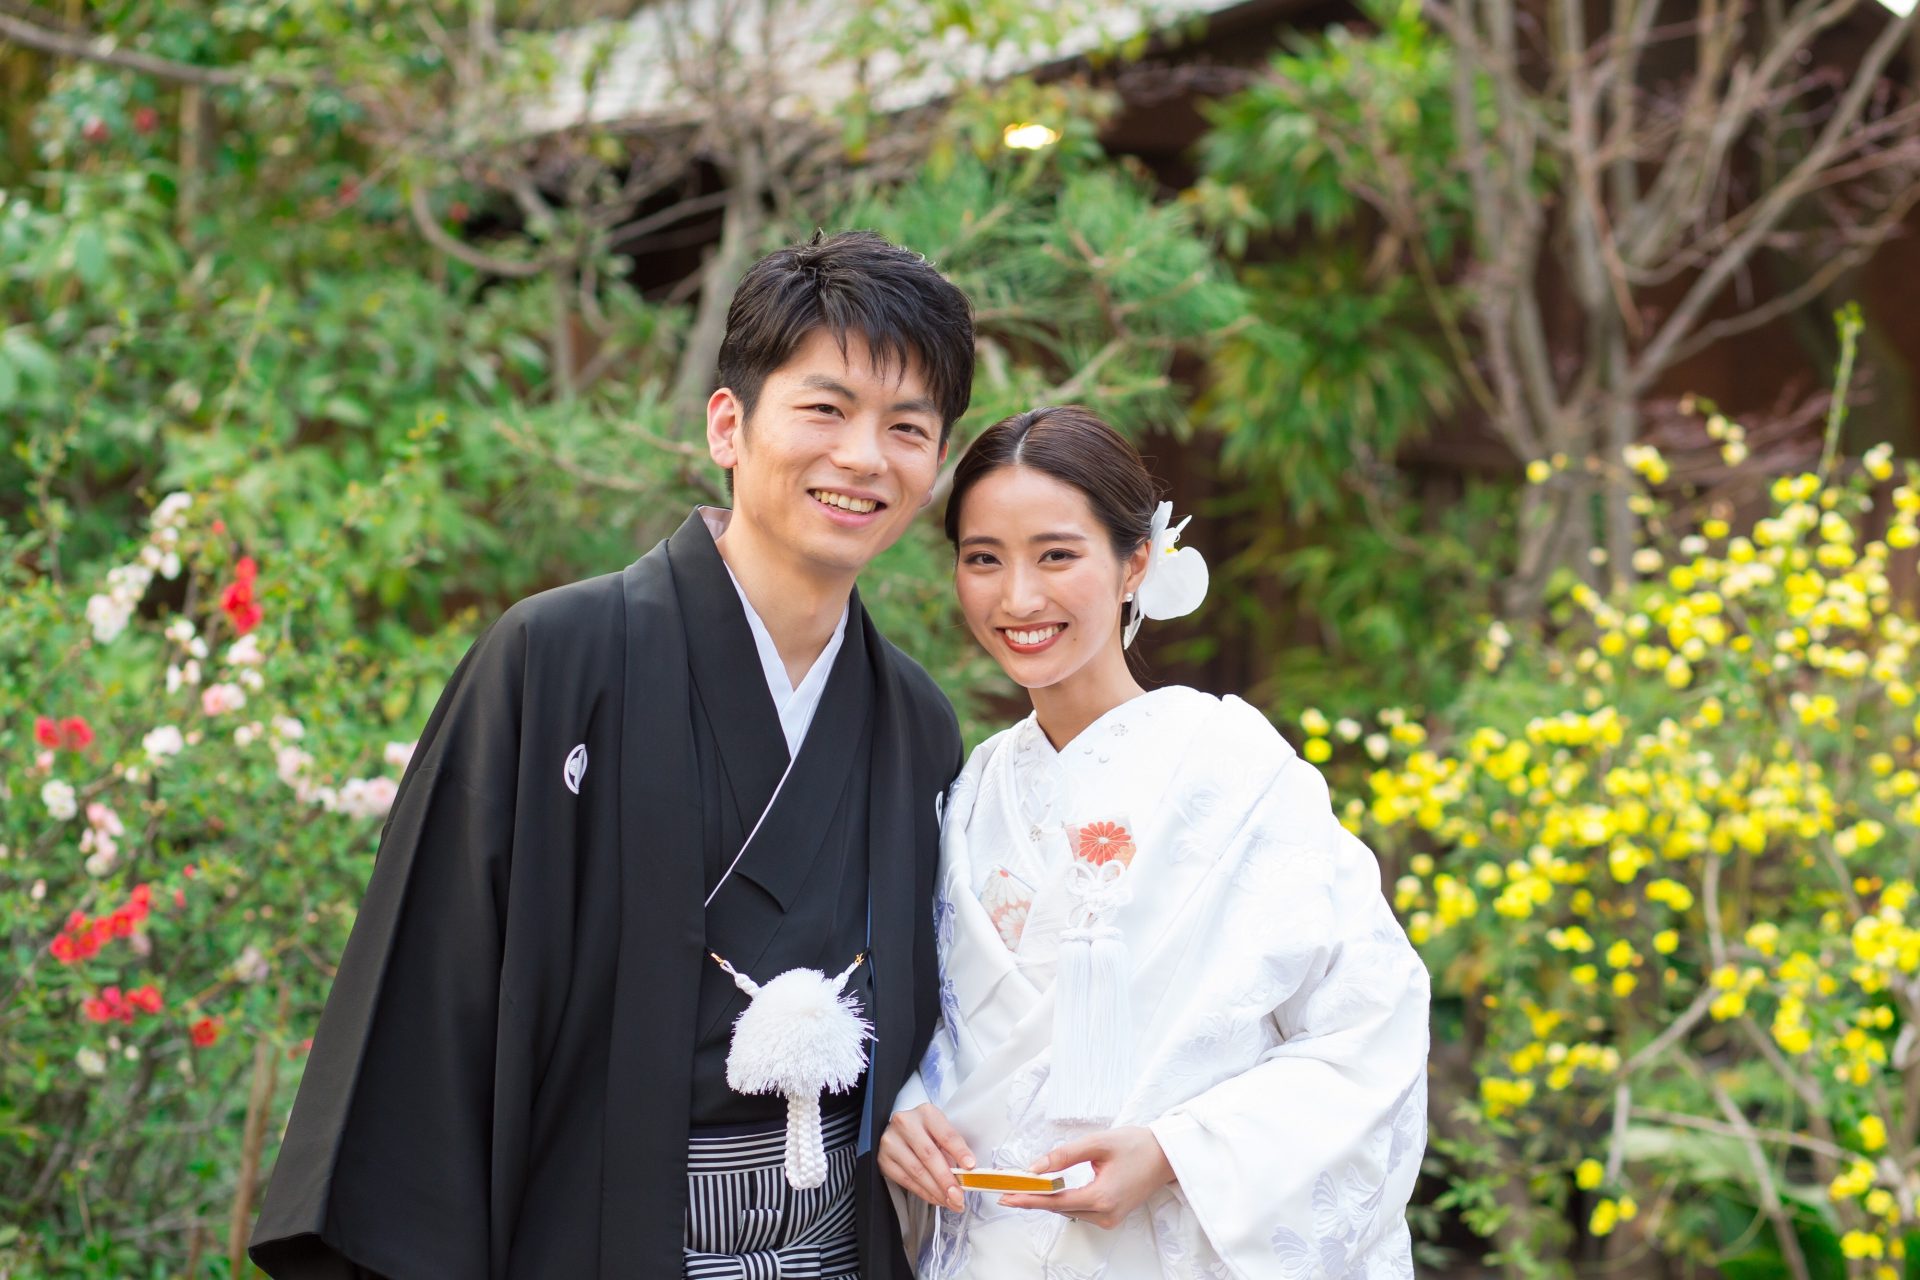 京都東山にある結婚式会場ソウドウでの白無垢を着た和装の結婚式